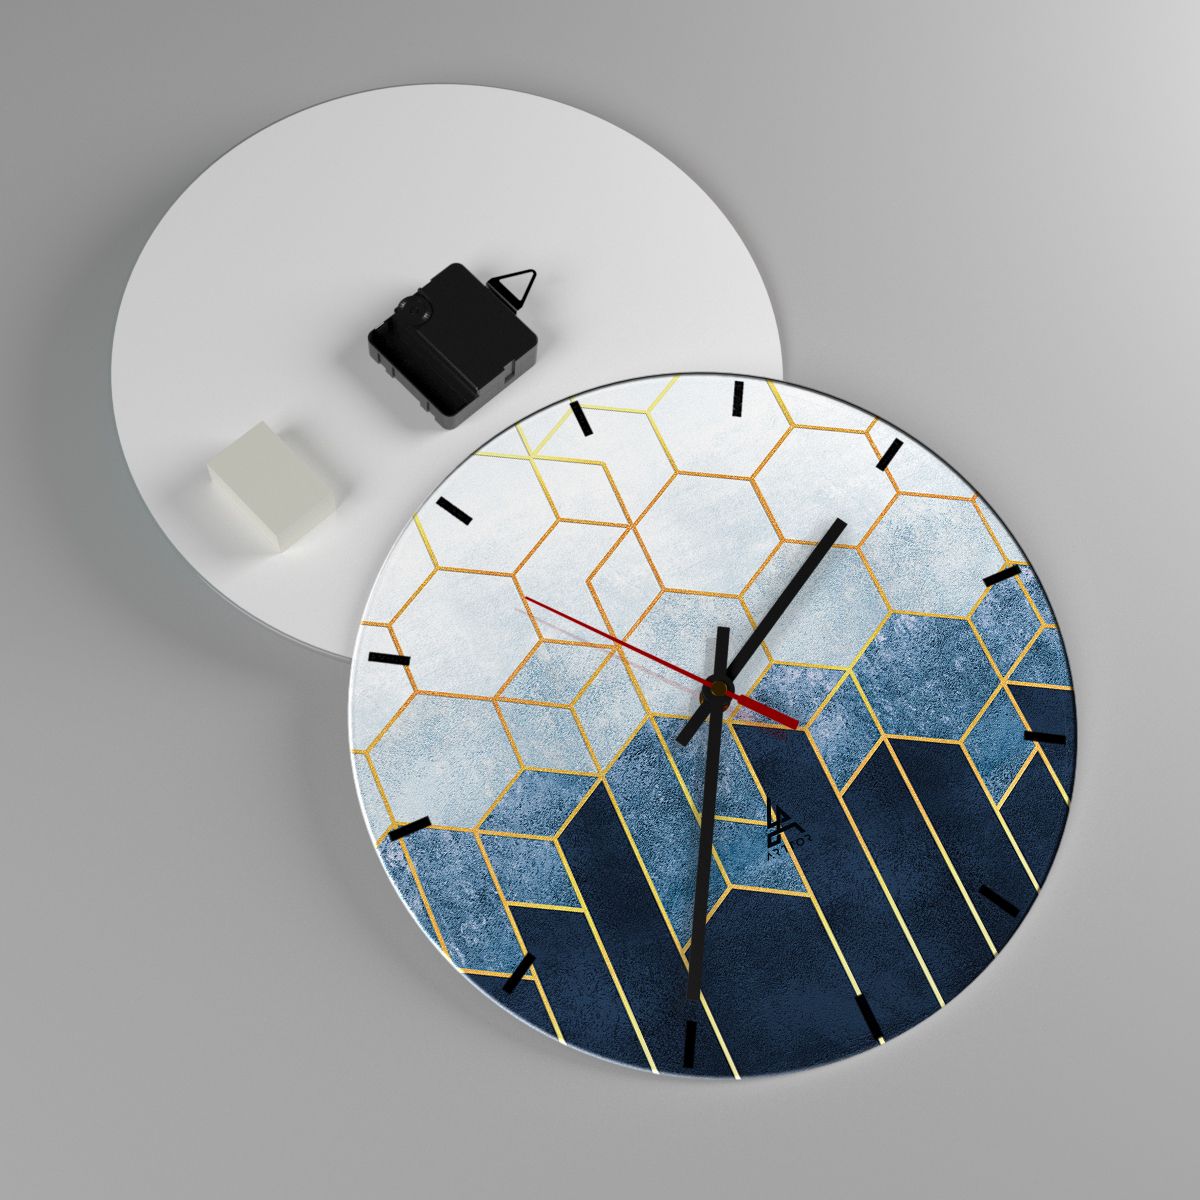 Reloj de pared Abstracción, Reloj de pared Arte, Reloj de pared Hexágono, Reloj de pared Arte Moderno, Reloj de pared Arte Moderno.